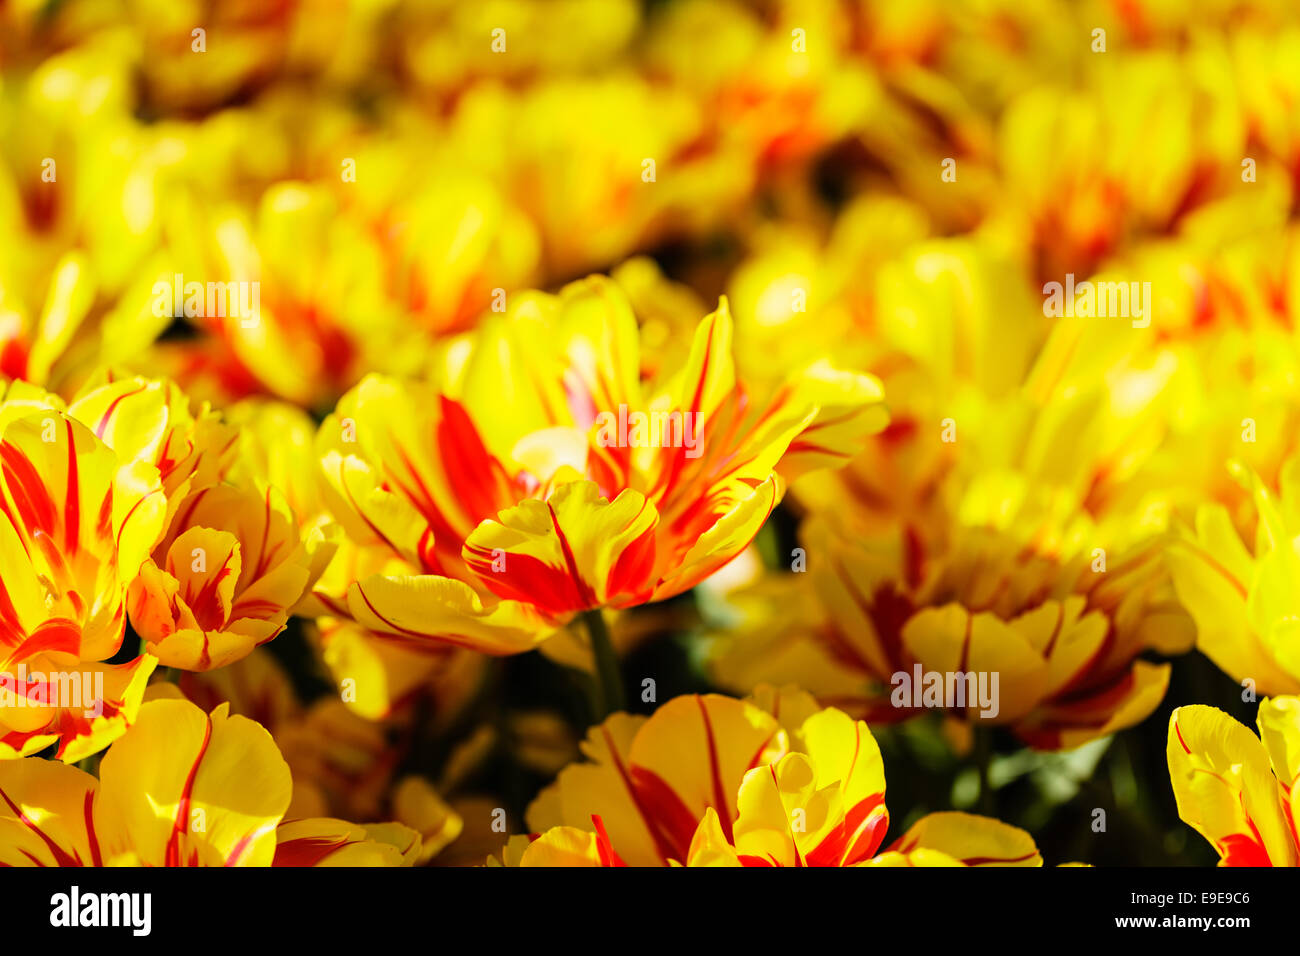 Offenen gelbe und rote Tulpen geringe Schärfentiefe Stockfoto